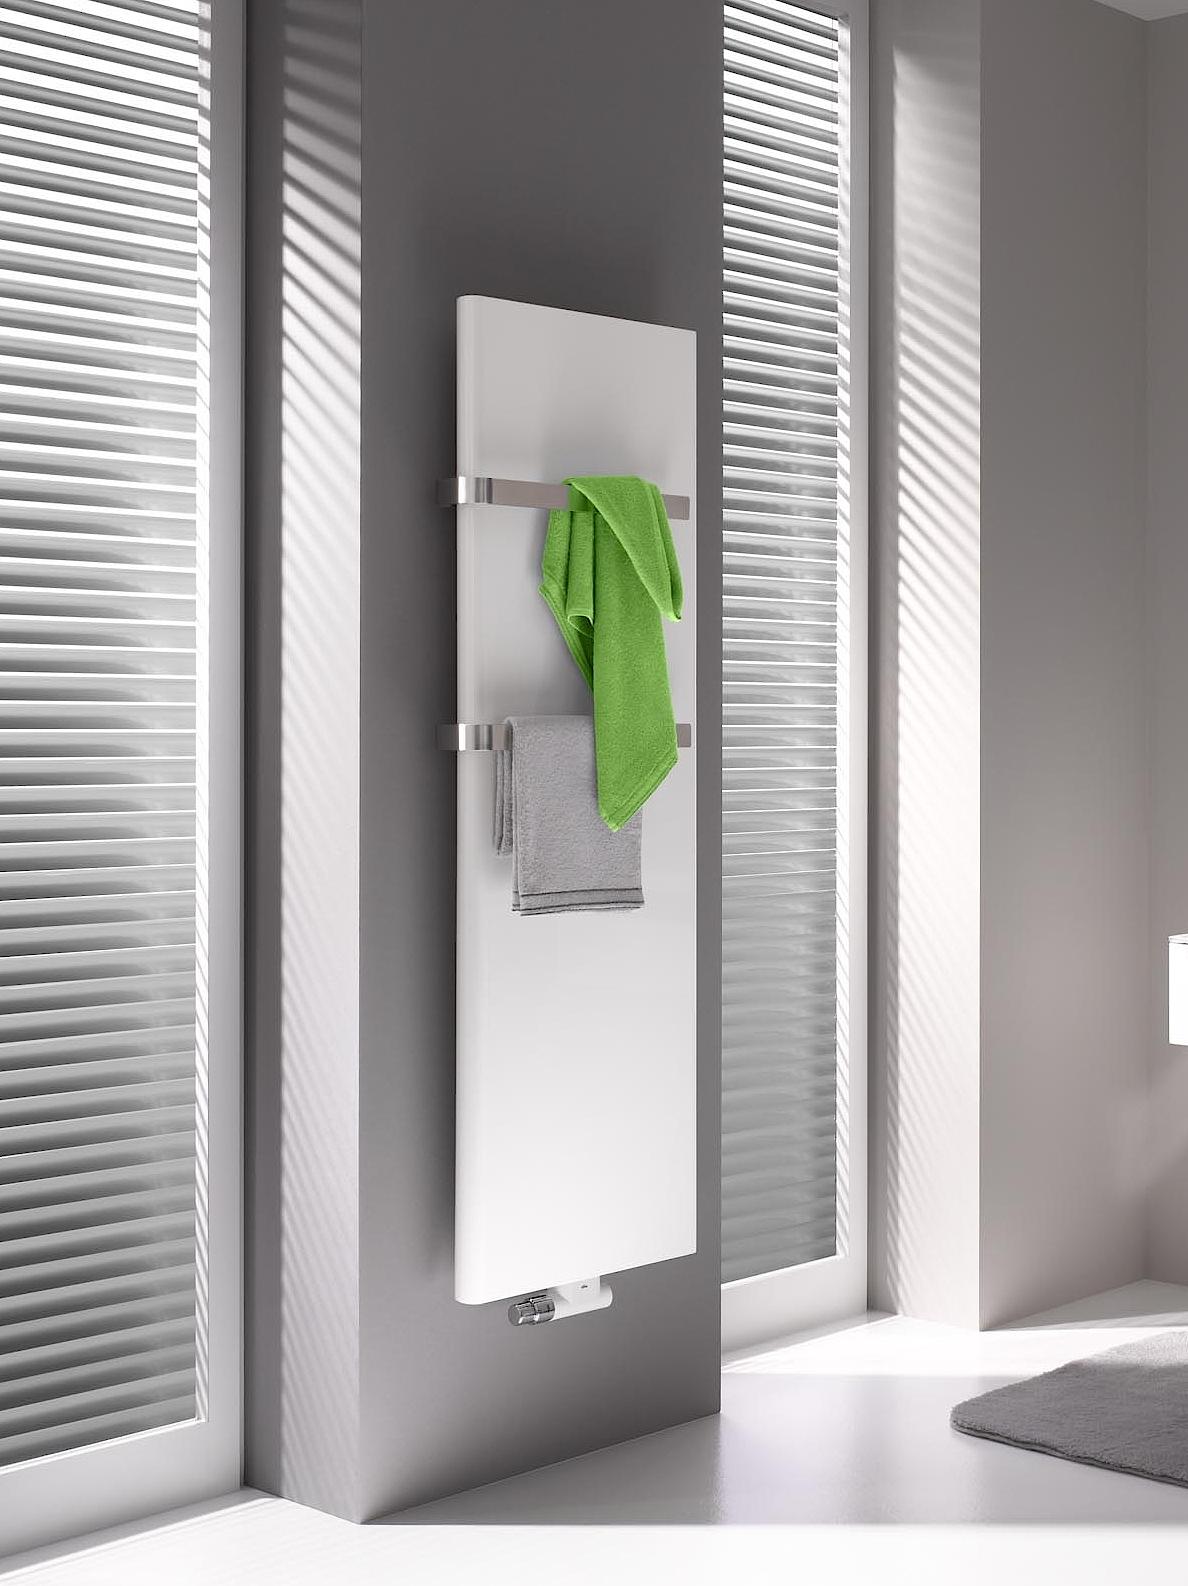 Il radiatore da bagno e di design Kermi Pateo è un modello di riferimento in termini di prestazioni ed efficienza energetica grazie all'esclusiva tecnologia x2.